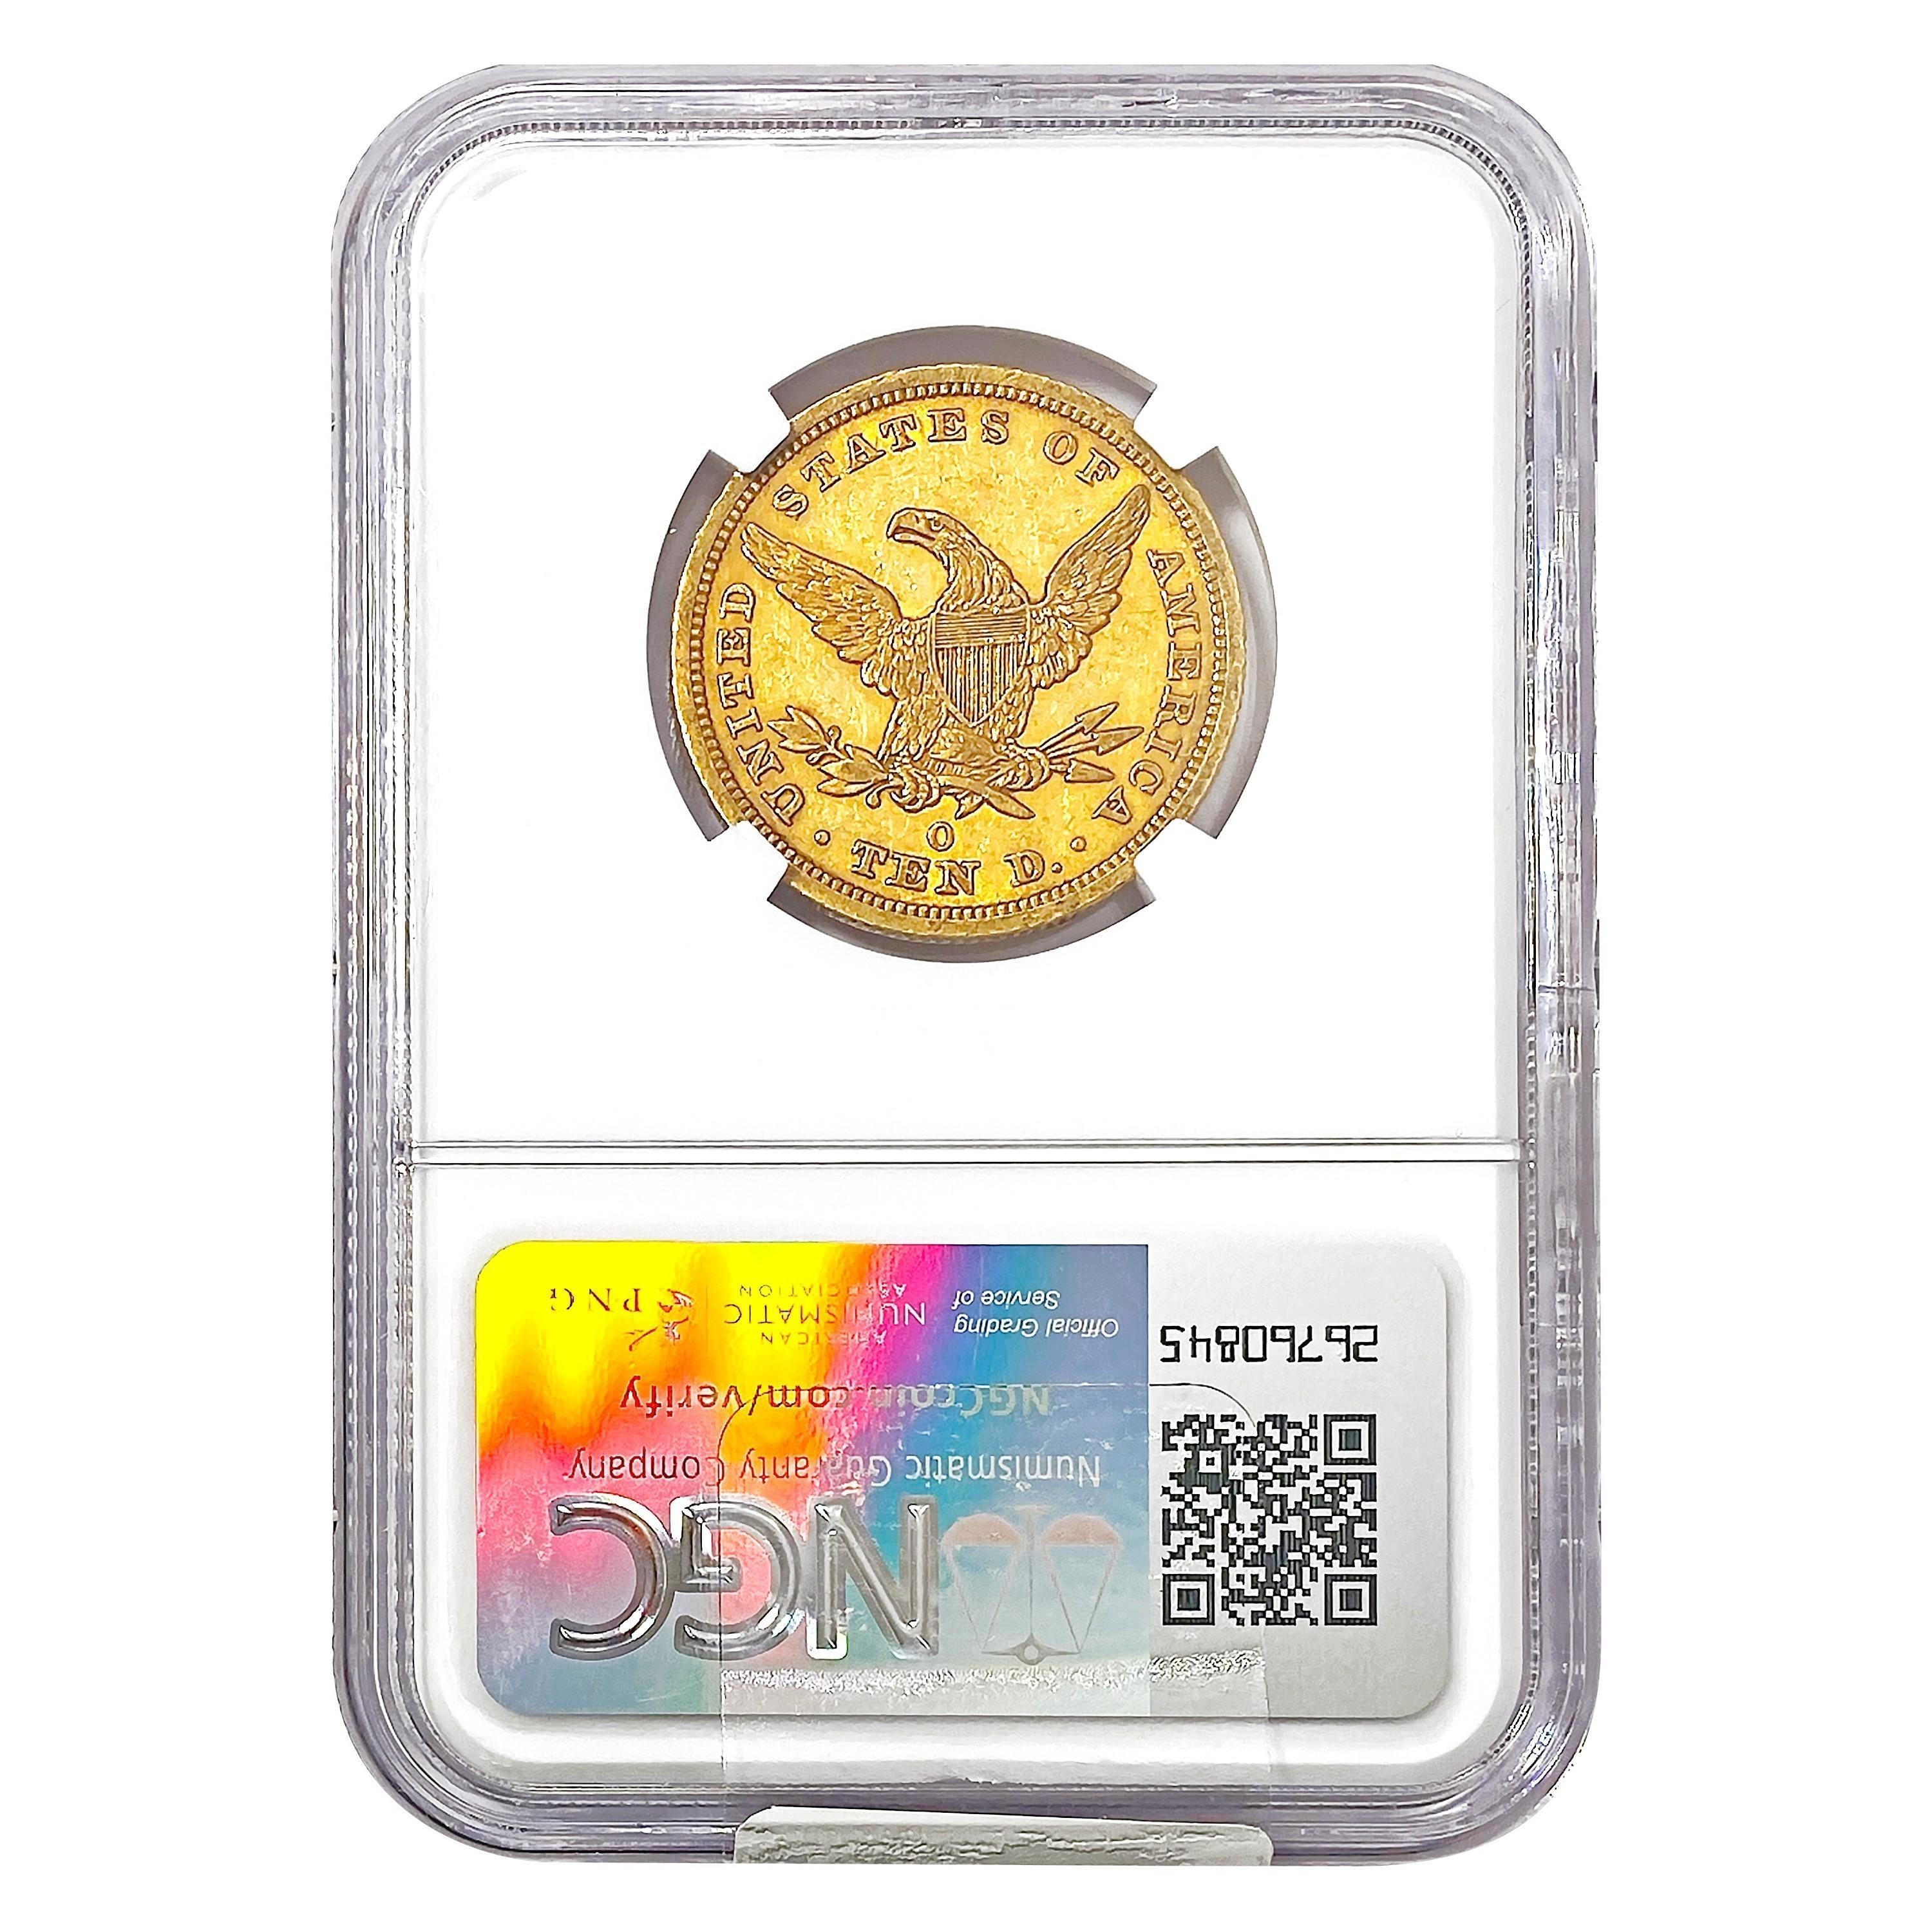 1843-O $10 Gold Eagle NGC AU55